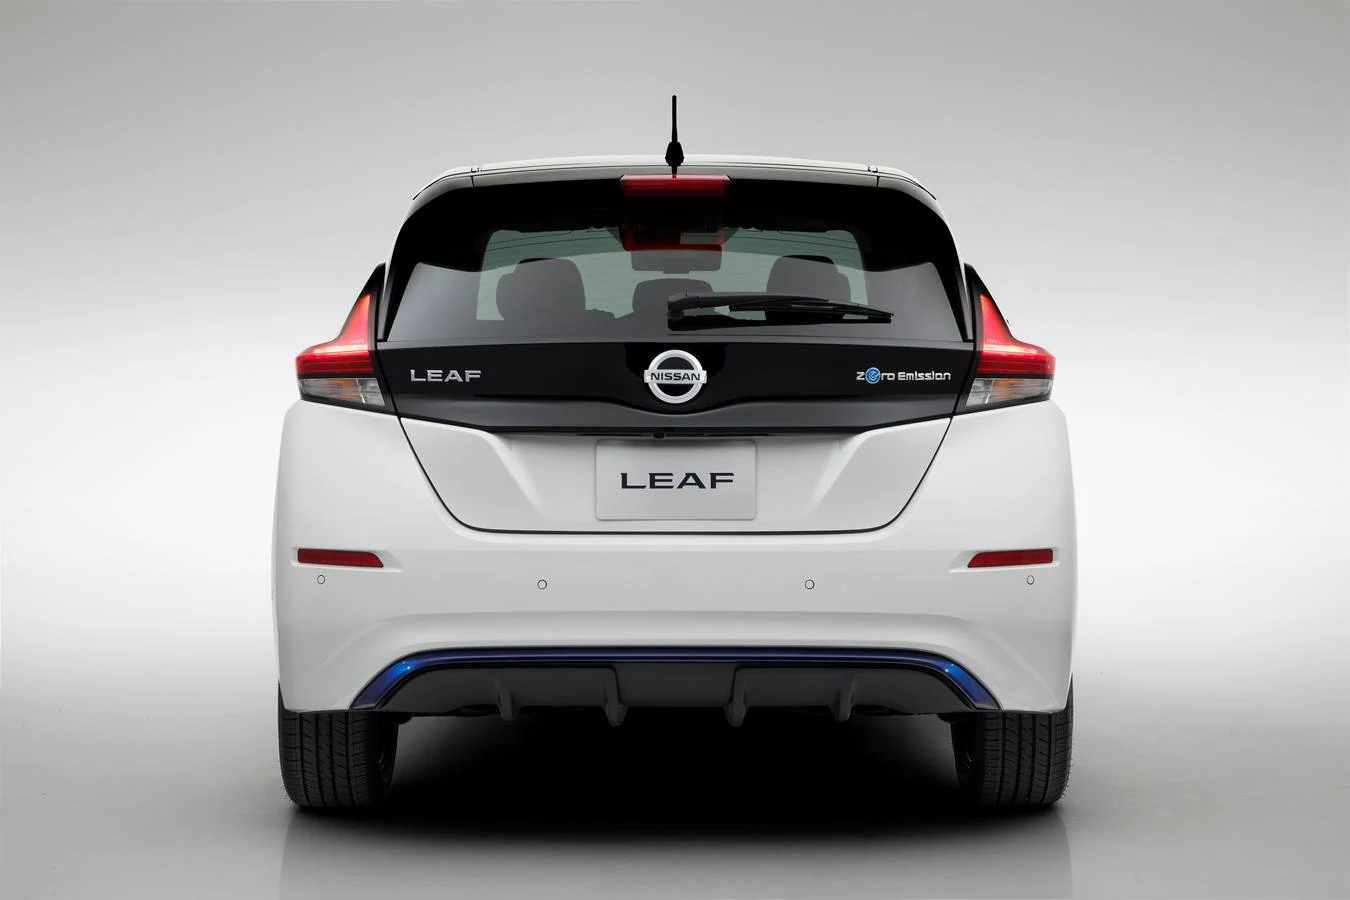 Renovación completa del Nissan Leaf con más potencia, mayor autonomía y mejores tecnologías de seguridad y conectividad. Las primeras unidades llegan a primeros de año.